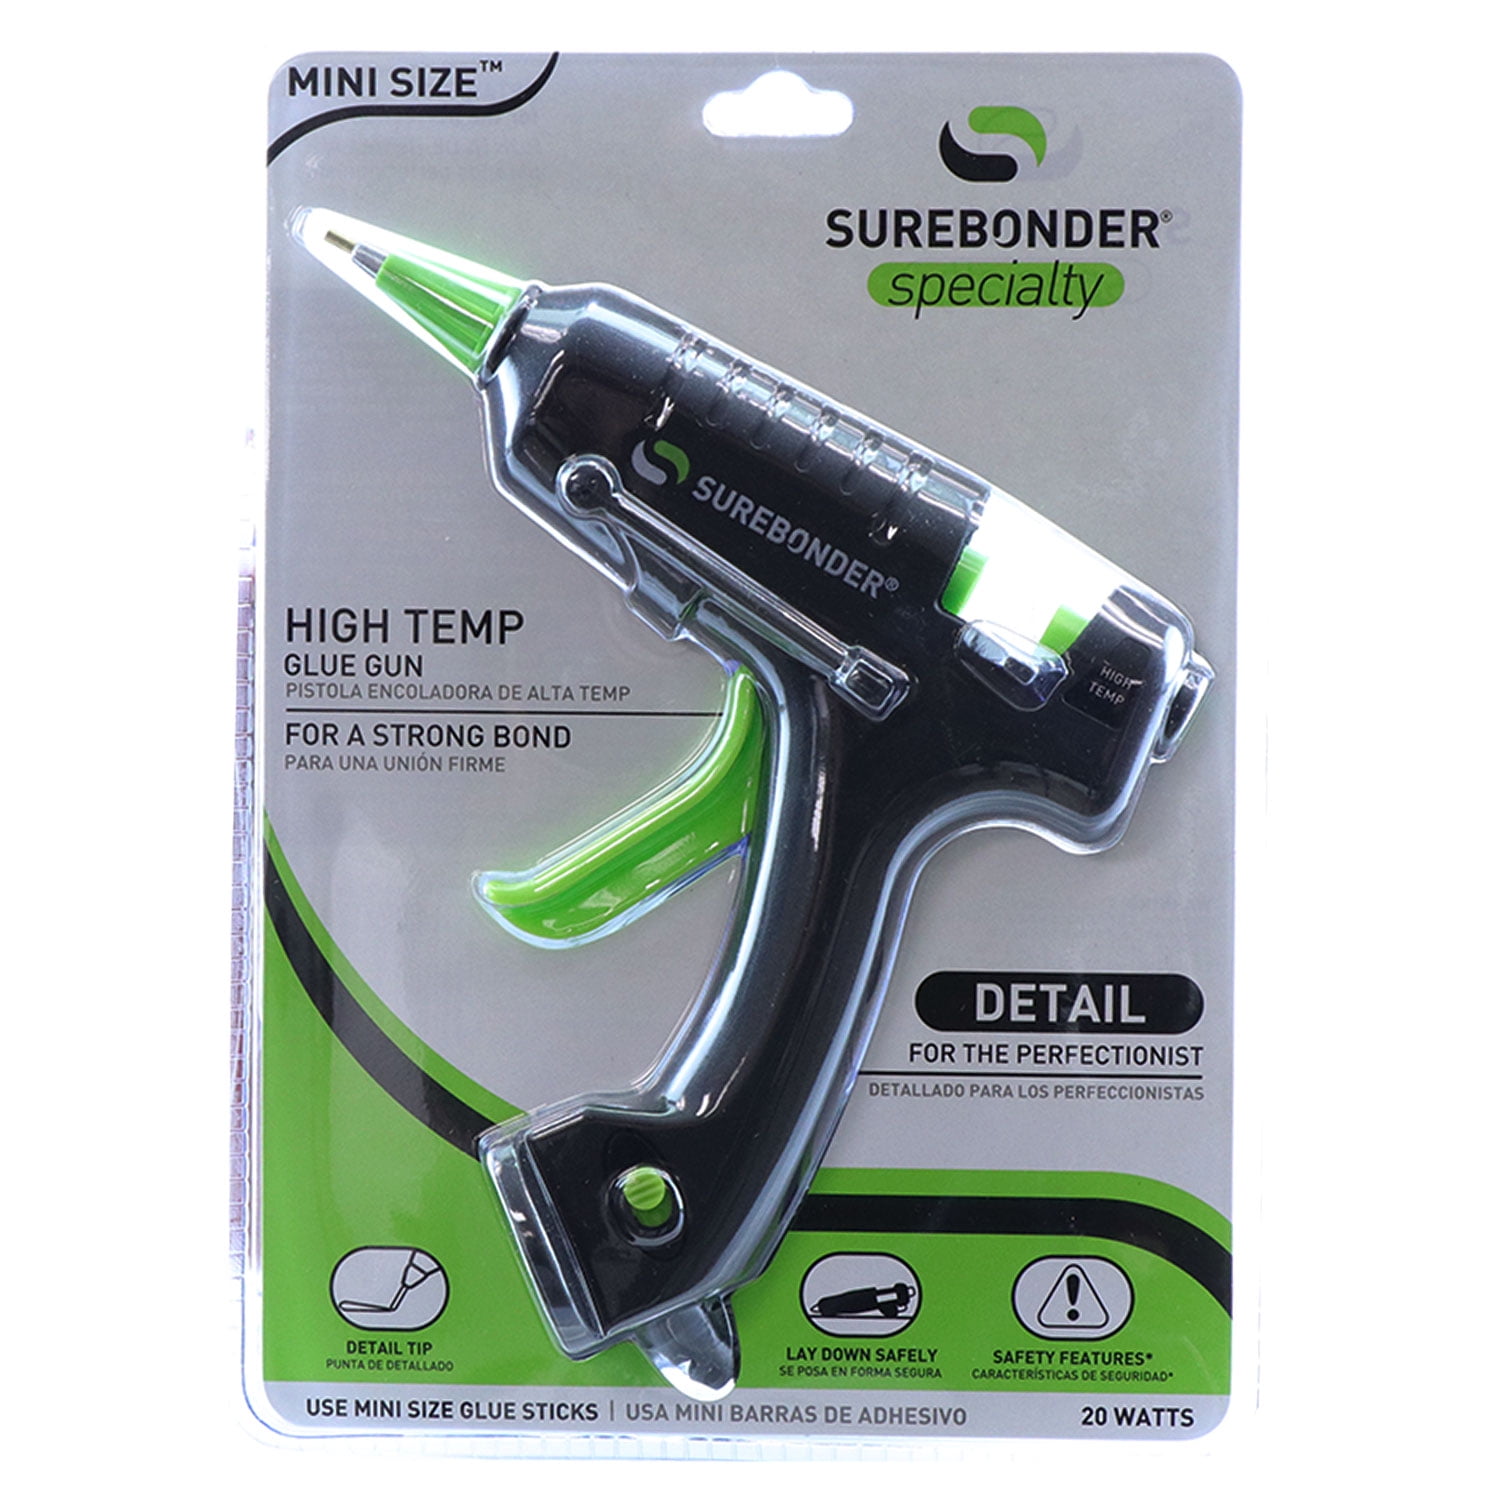 SUREBONDER Plus Series Mini Glue Gun High Temp 10W - Includes 12 Glue Sticks  - UL Listed - Mini Size - 0.27-in Diameter - Ready to Use in the Glue Guns  department at